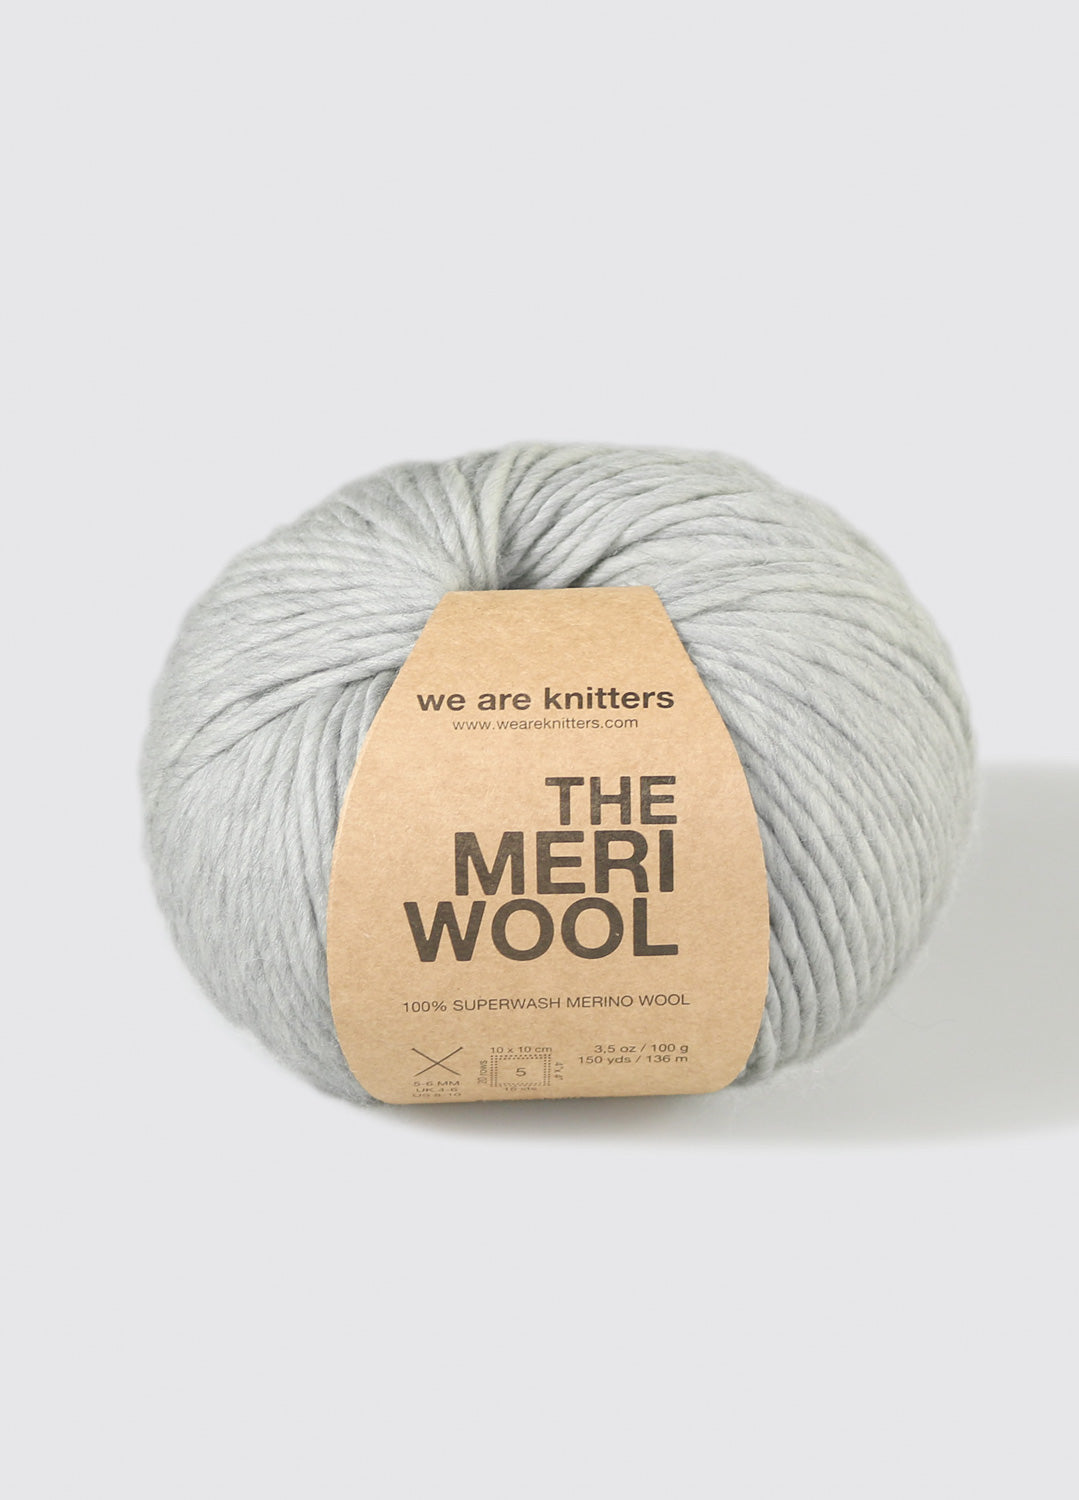 NEIWAI X Woolmark Collection - Sustainable Styles in Merino Wool